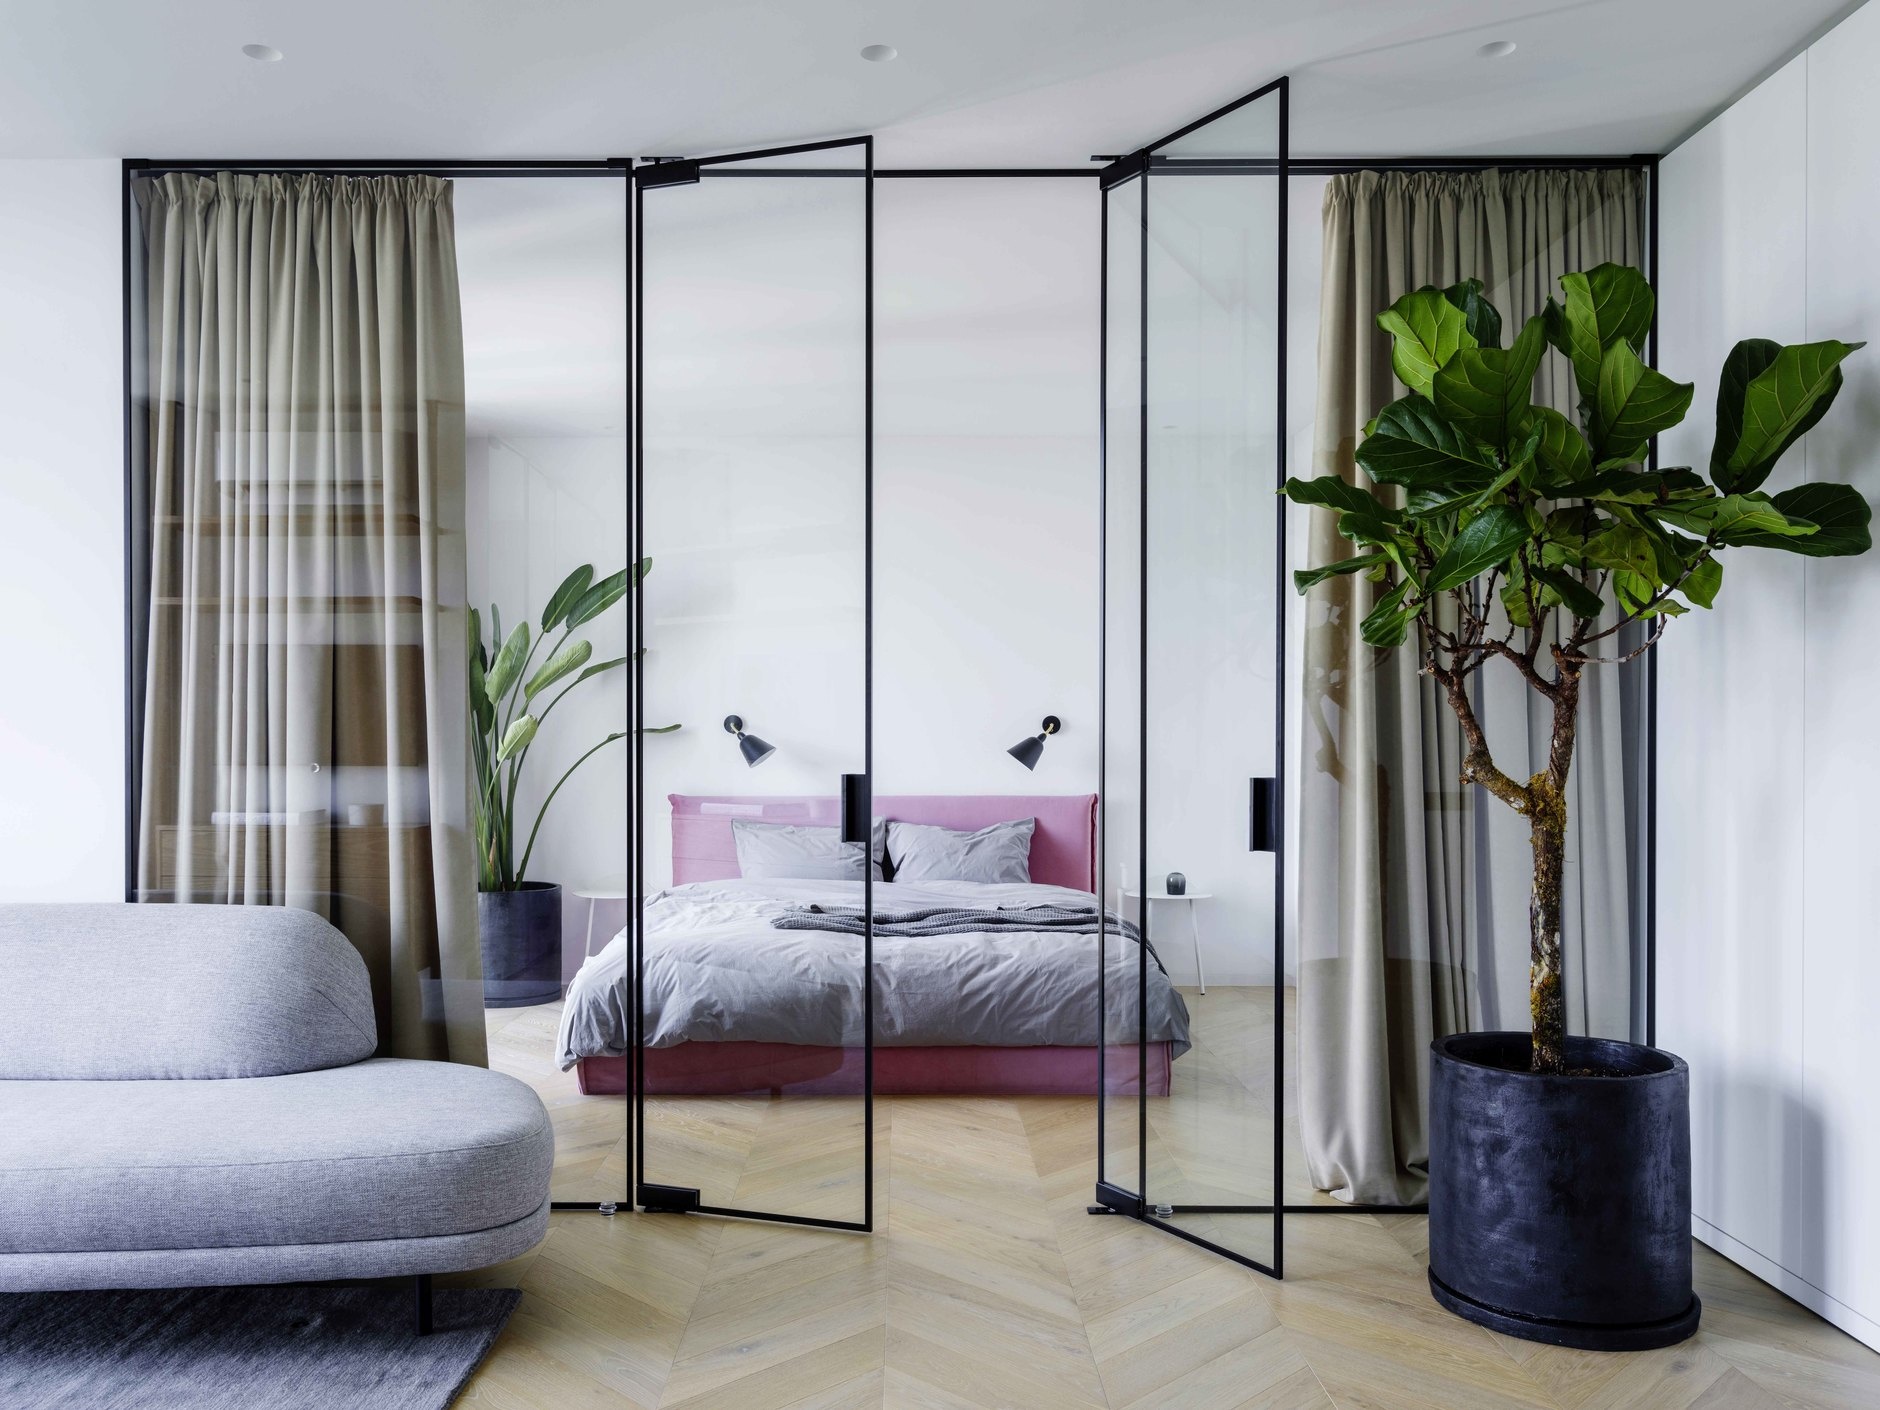 Dự án của Iya Turabelidze với không gian phòng ngủ được phân tách với phần còn lại của căn hộ bằng cấu trúc kính trong suốt kết hợp rèm che dày dặn để tạo sự riêng tư. Vào ban ngày, rèm được mở để ánh sáng thông suốt không gian.